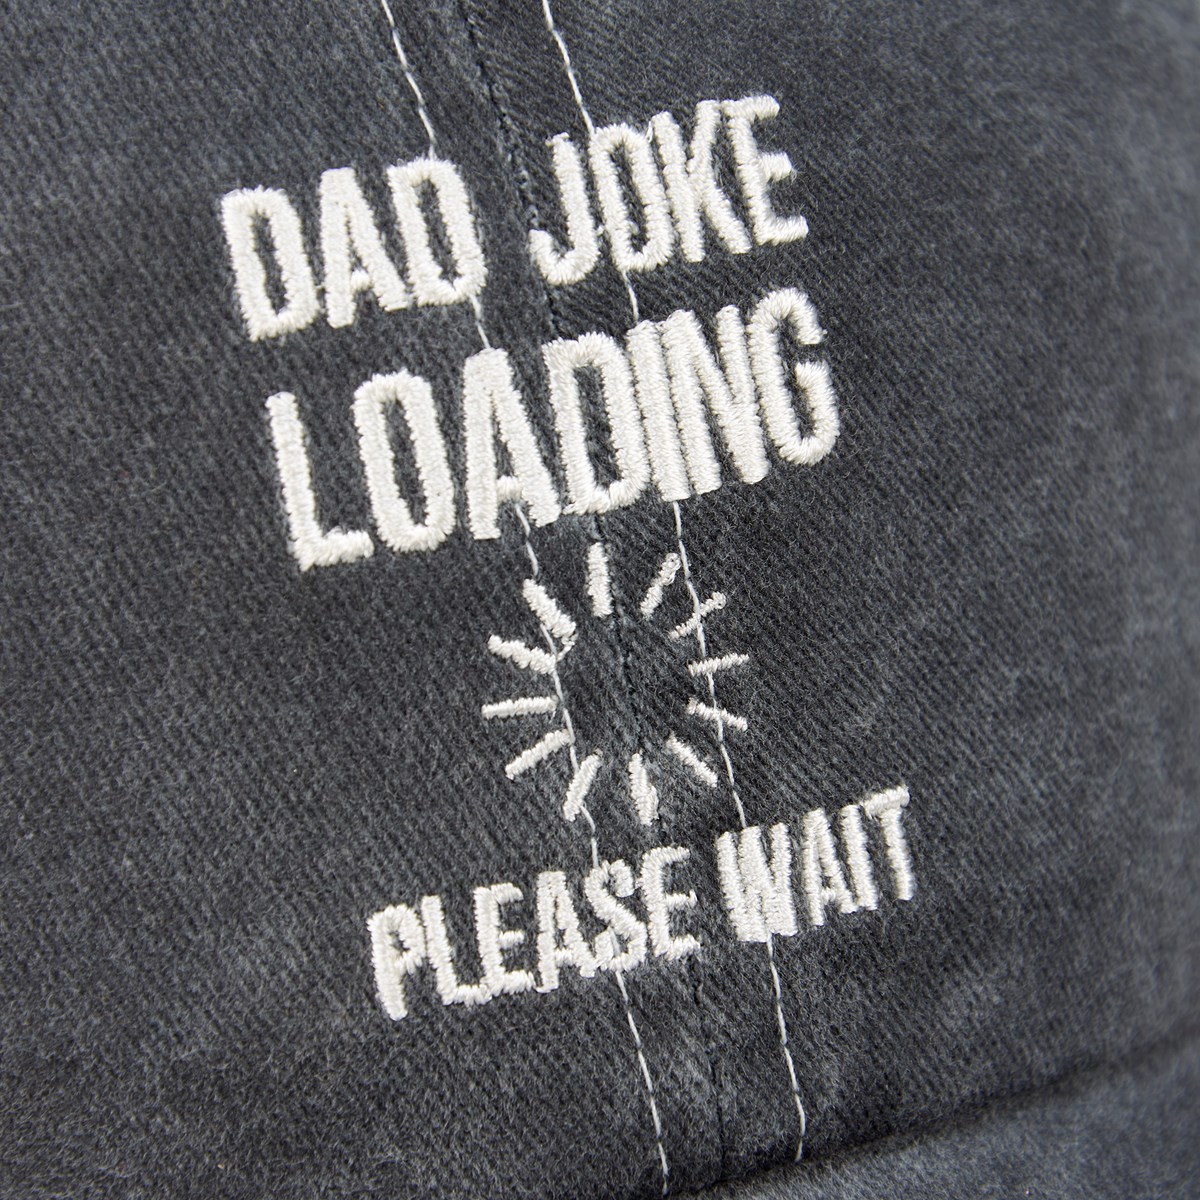 Dad Joke Loading Baseball Cap - Cotton, Metal